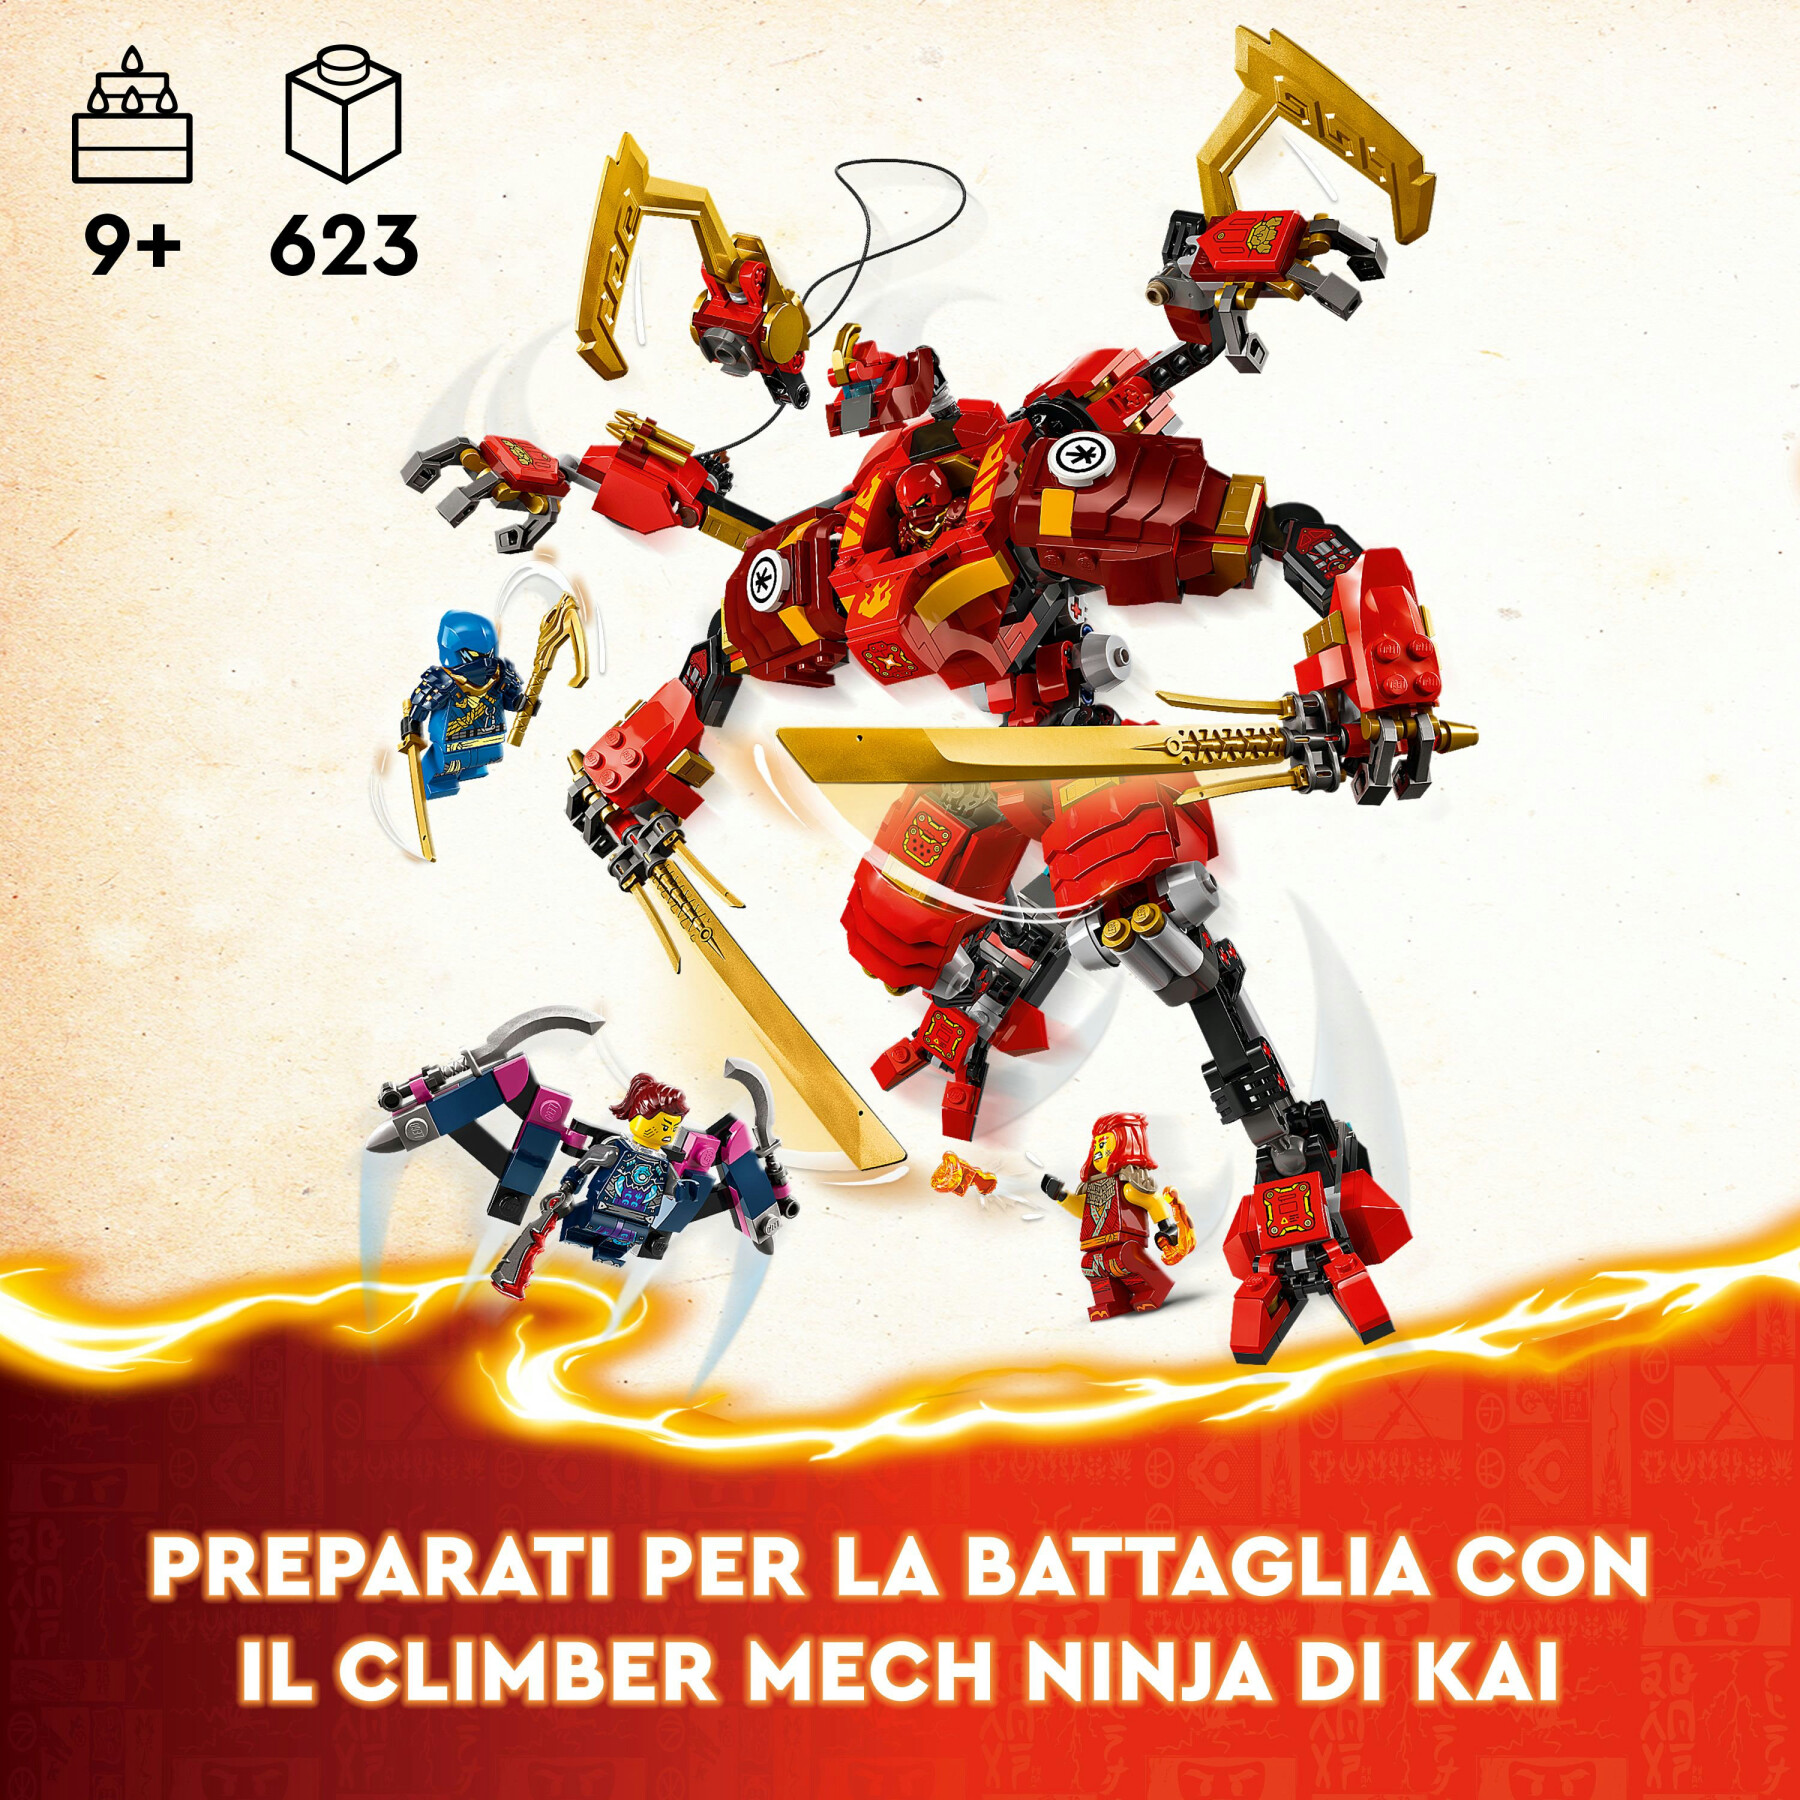 Lego ninjago 71812 climber mech ninja di kai, giochi per bambini 9+ anni con guerriero giocattolo da costruire e 4 minifigure - LEGO NINJAGO